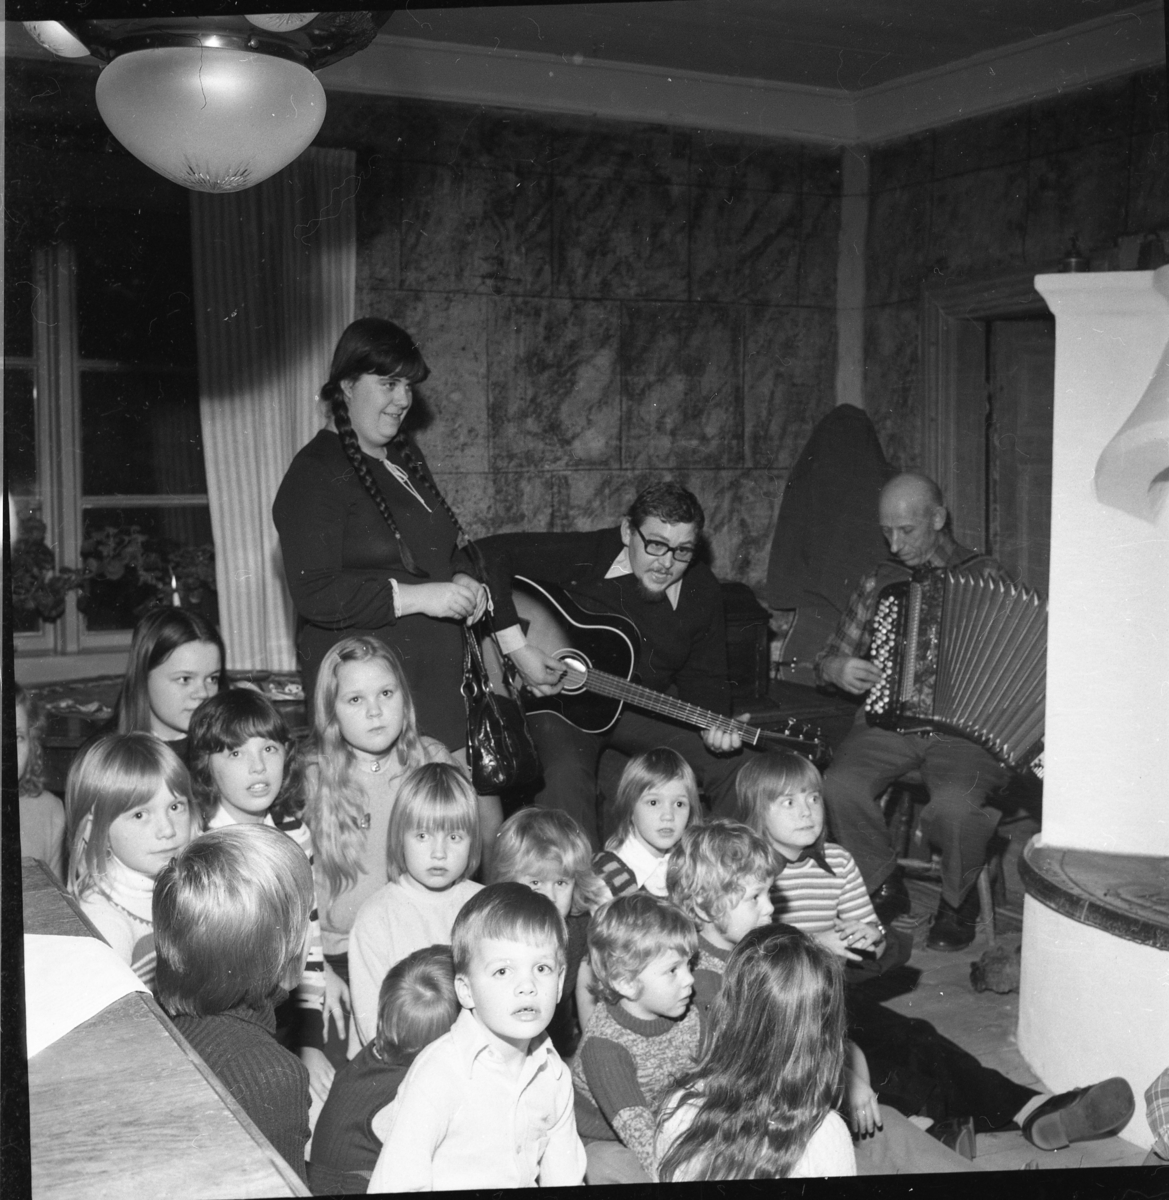 Vuxna och barn i en stuga med öppen spis. Två män spelar gitarr respektive dragspel. Det är Ölmstad hembygdsförenings julfest.